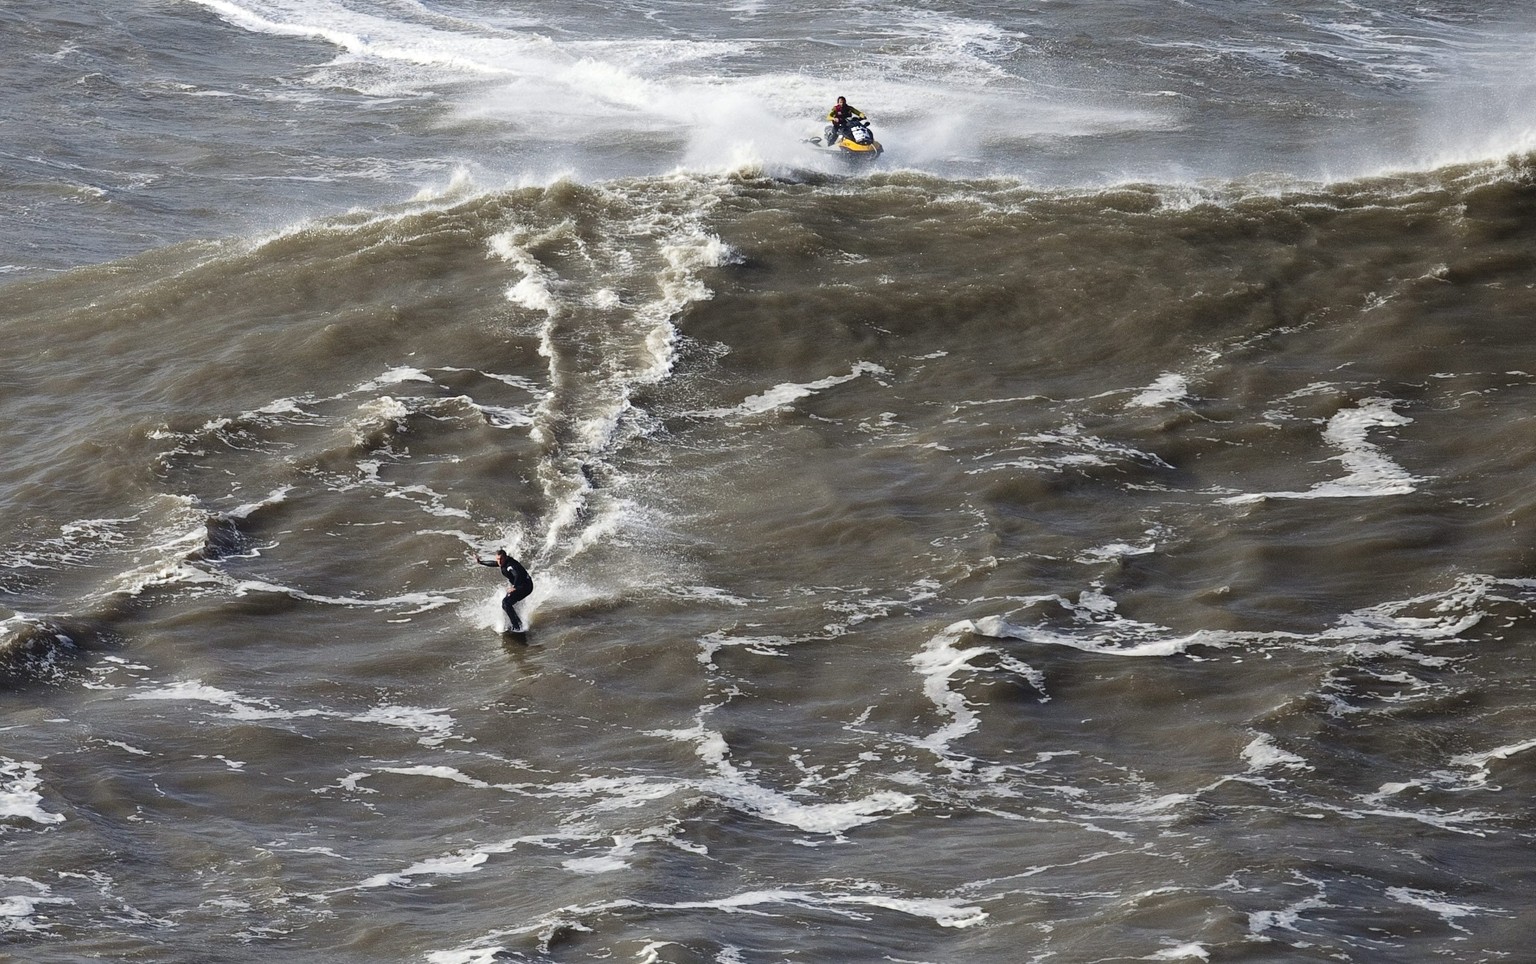 Von den Stürmen profitieren waghalsige Surfer. Garrett McNamara reitet eine Riesenwelle vor Nazare, Portugal.